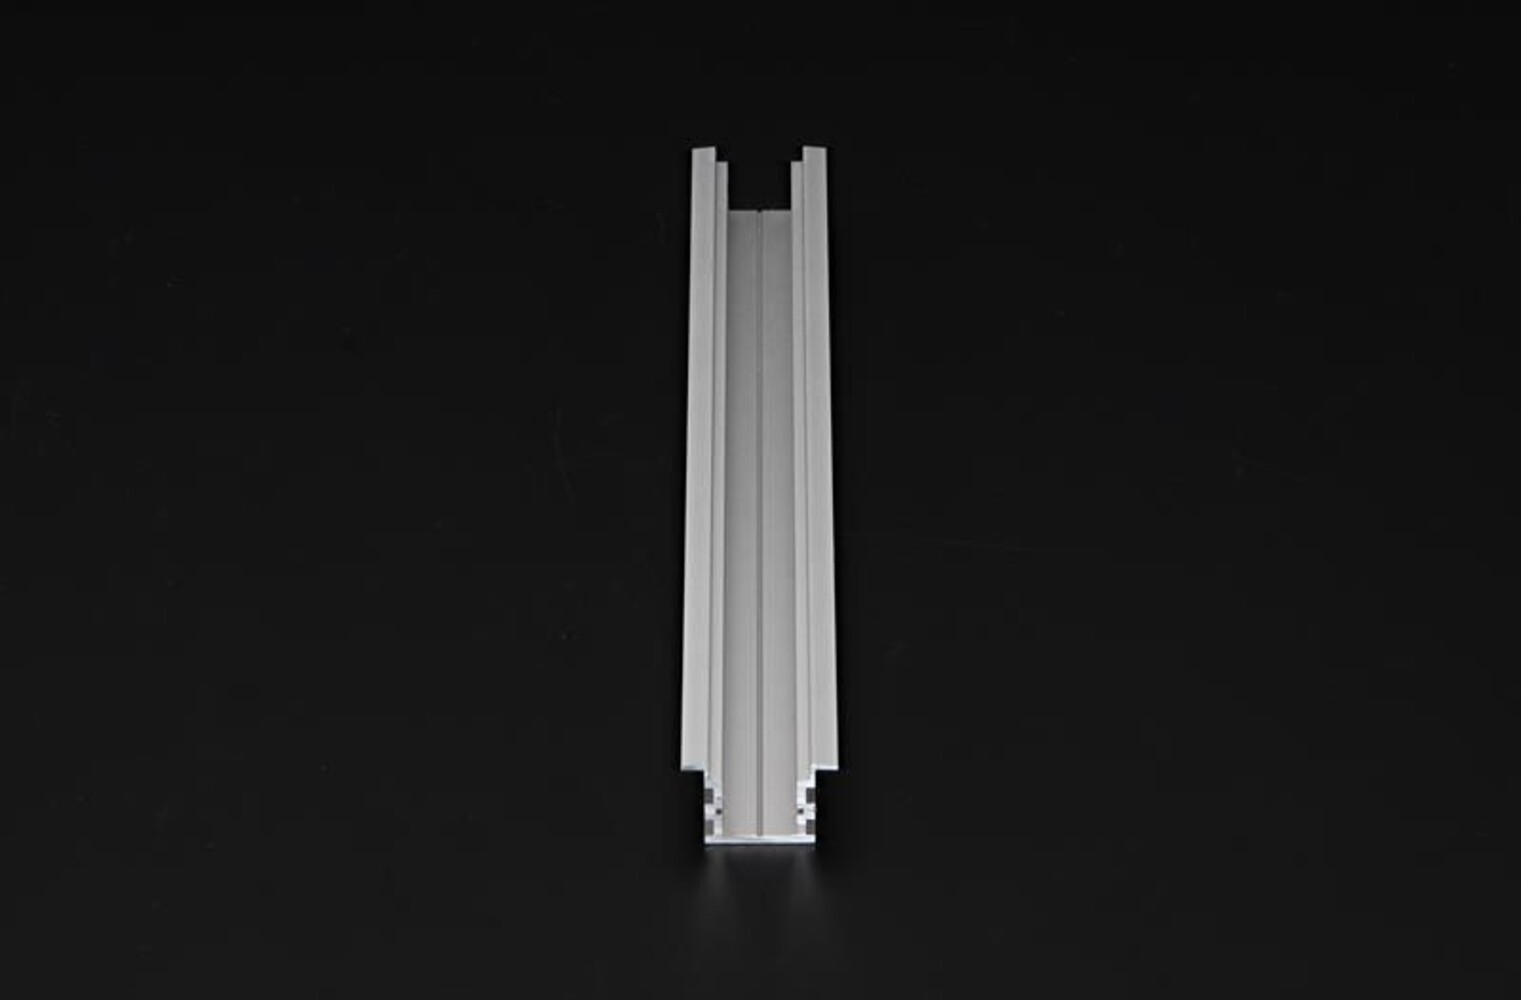 Deko-Light LED-Profil in Silber matt, elegant eloxiert und perfekt für 15-16.3mm LED-Stripes